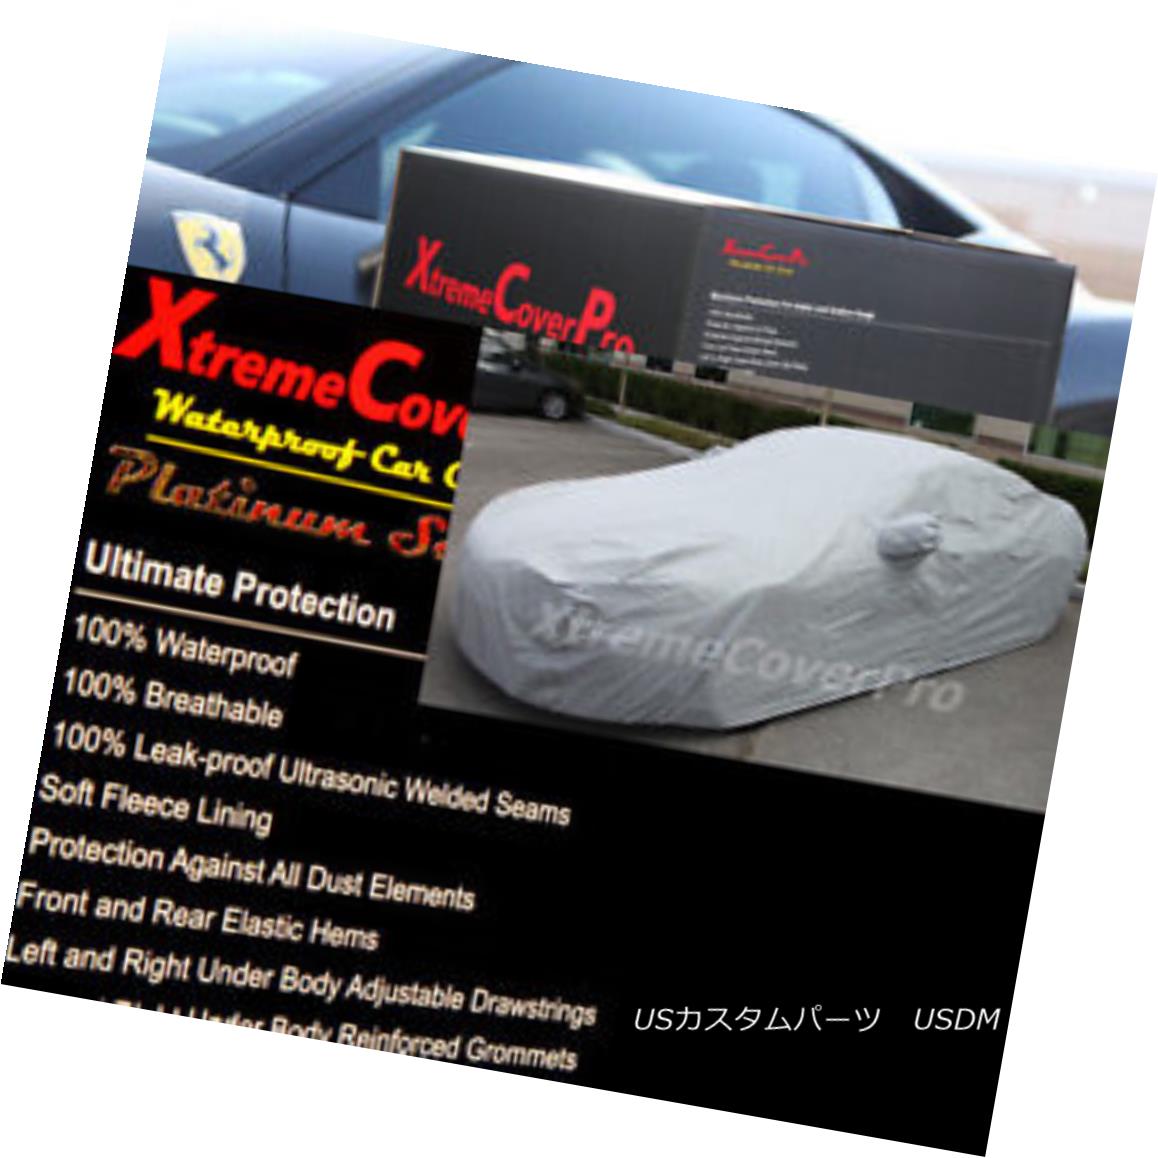 1999 2000 MERCEDES CLK320 CLK430 CLK55 Waterproof Car Cover w/MirrorPocketカテゴリカーカバー状態新品メーカー車種発送詳細送料一律 1000円（※北海道、沖縄、離島は省く）商品詳細輸入商品の為、英語表記となります。 Condition: New Warranty: Limited Lifetime through Manufacturer Breathable: Yes Brand: XTREMECOVERPRO Inside Lining: Cotton Manufacturer Part Number: Does Not Apply Fit: Universal Fit Surface Finish: Anti UV Non-Woven Fabric FITMENT: PLEASE REFER TO AUCTION TITLE MATCHES YOUR VEHICLE Color: Gray Type: Full Coverage Cover※以下の注意事項をご理解頂いた上で、ご入札下さい※■海外輸入品の為、NC,NRでお願い致します。■フィッテングや車検対応の有無については、画像と説明文よりお客様の方にてご判断をお願いしております。■USのカスタムパーツは国内の純正パーツを取り外した後、接続コネクタが必ずしも一致するとは限らず、加工が必要な場合がございます。■商品説明文中に英語にて”保障”に関する記載があっても適応はされませんので、ご理解ください。■初期不良（到着より7日以内）のみ保証対象とします。ただし、取り付け後は、保証対象外とします。■海外倉庫から到着した製品を、再度国内で検品を行い、日本郵便または佐川急便にて発送となります。■お届けまでには、2〜3週間程頂いております。ただし、天候次第で多少遅れが発生する場合もあります。■商品落札後のお客様のご都合によるキャンセルはお断りしておりますが、商品落札金額の30％の手数料をいただいた場合のみお受けいたします。■他にもUSパーツを多数出品させて頂いておりますので、ご覧頂けたらと思います。■USパーツの輸入代行も行っておりますので、ショップに掲載されていない商品でもお探しする事が可能です!!お気軽にお問い合わせ下さい。&nbsp;